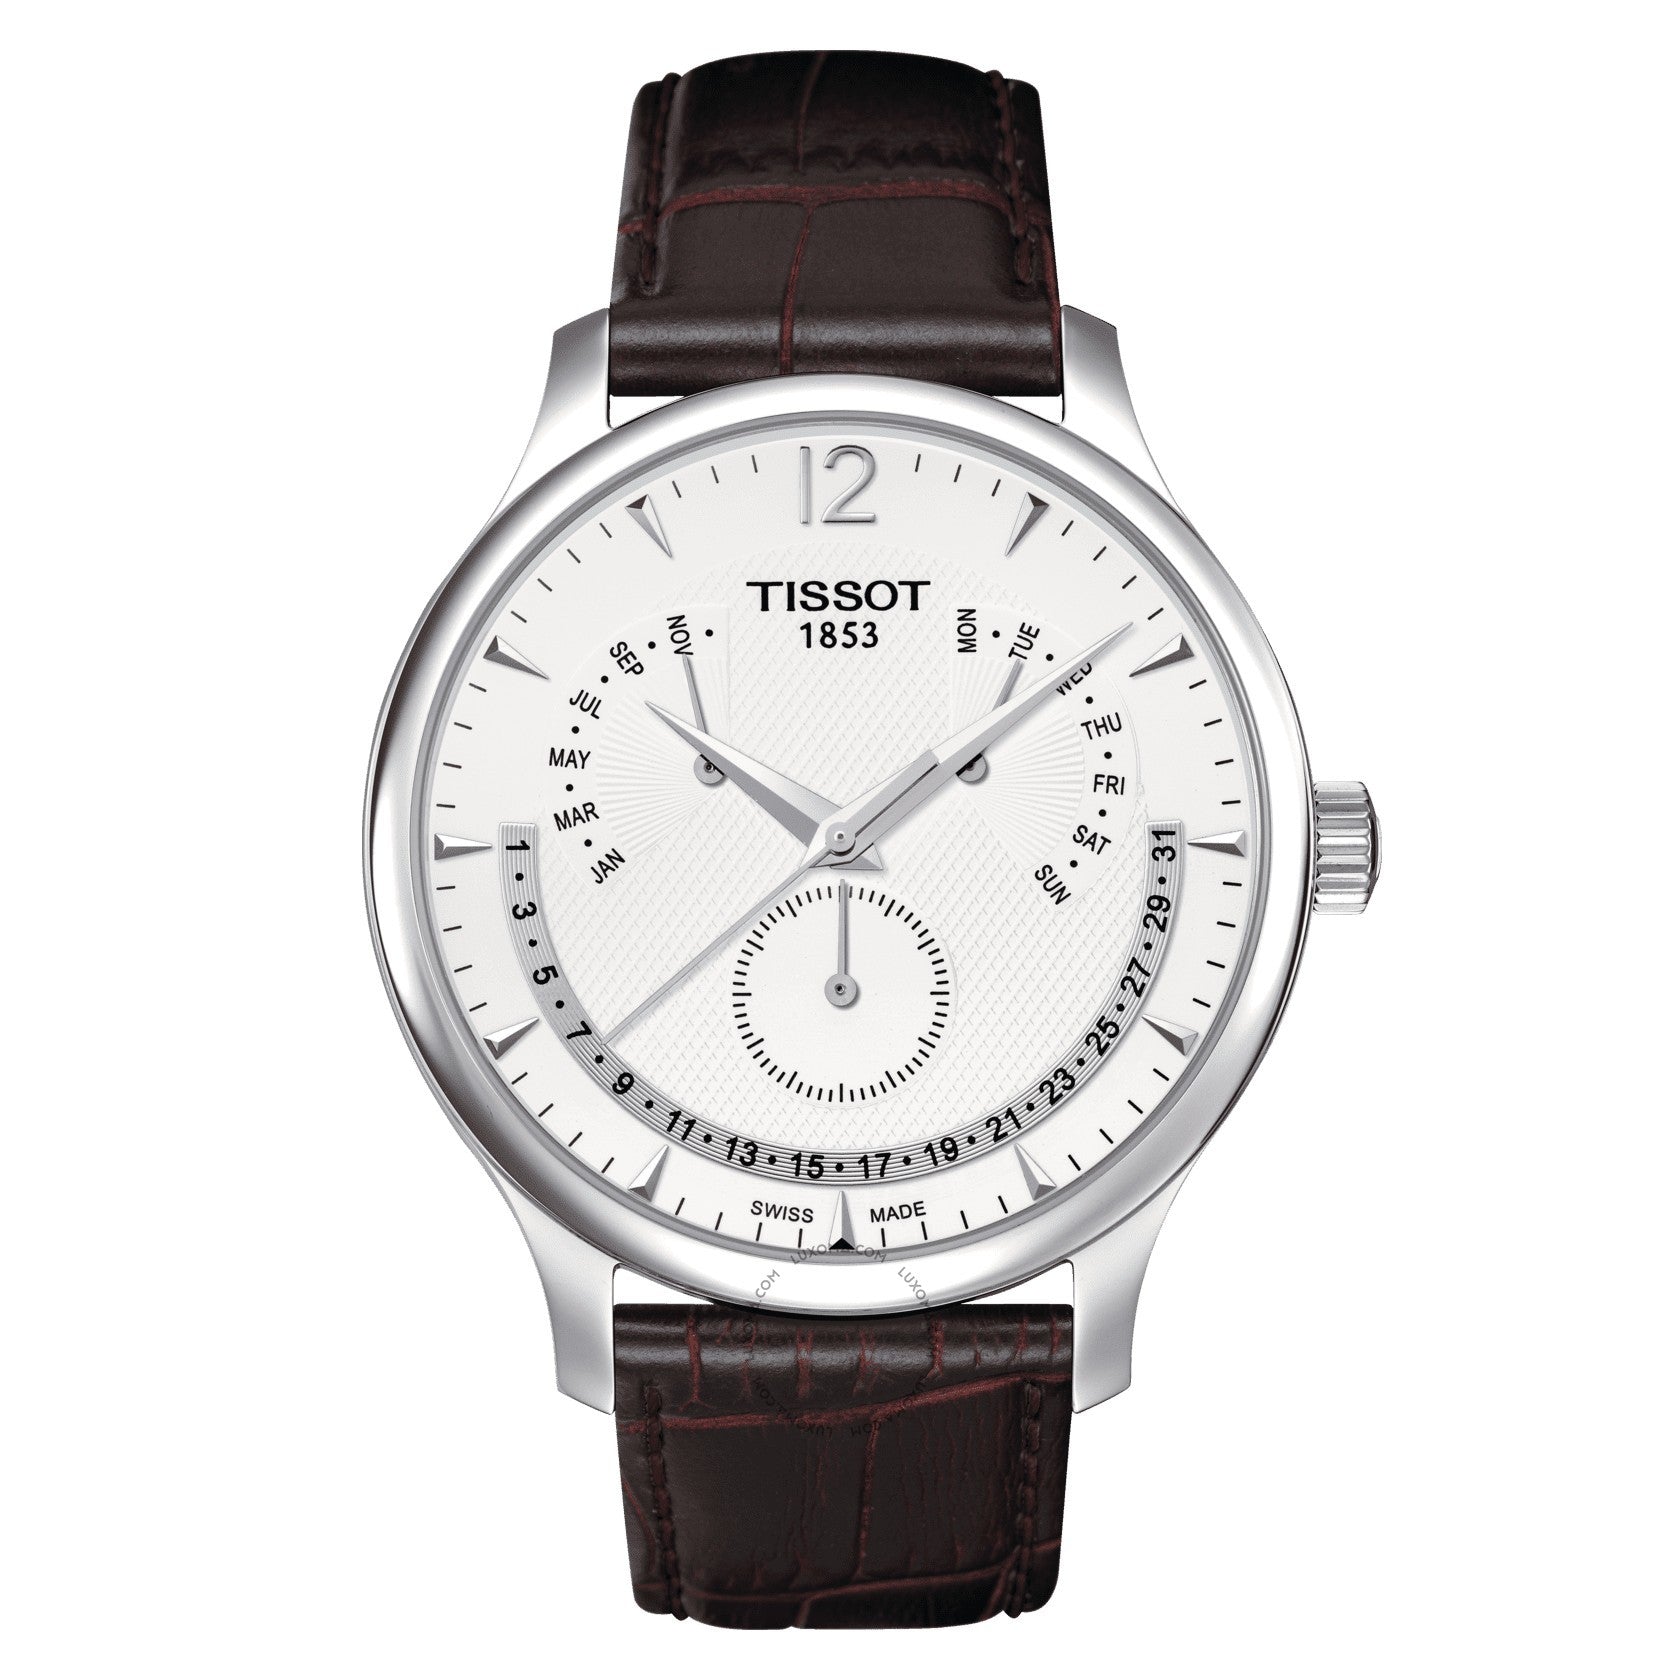 Tissot Tradition Perpetual Calendar Quartz Silver Dial Men's Watch T063.637.16.037.00